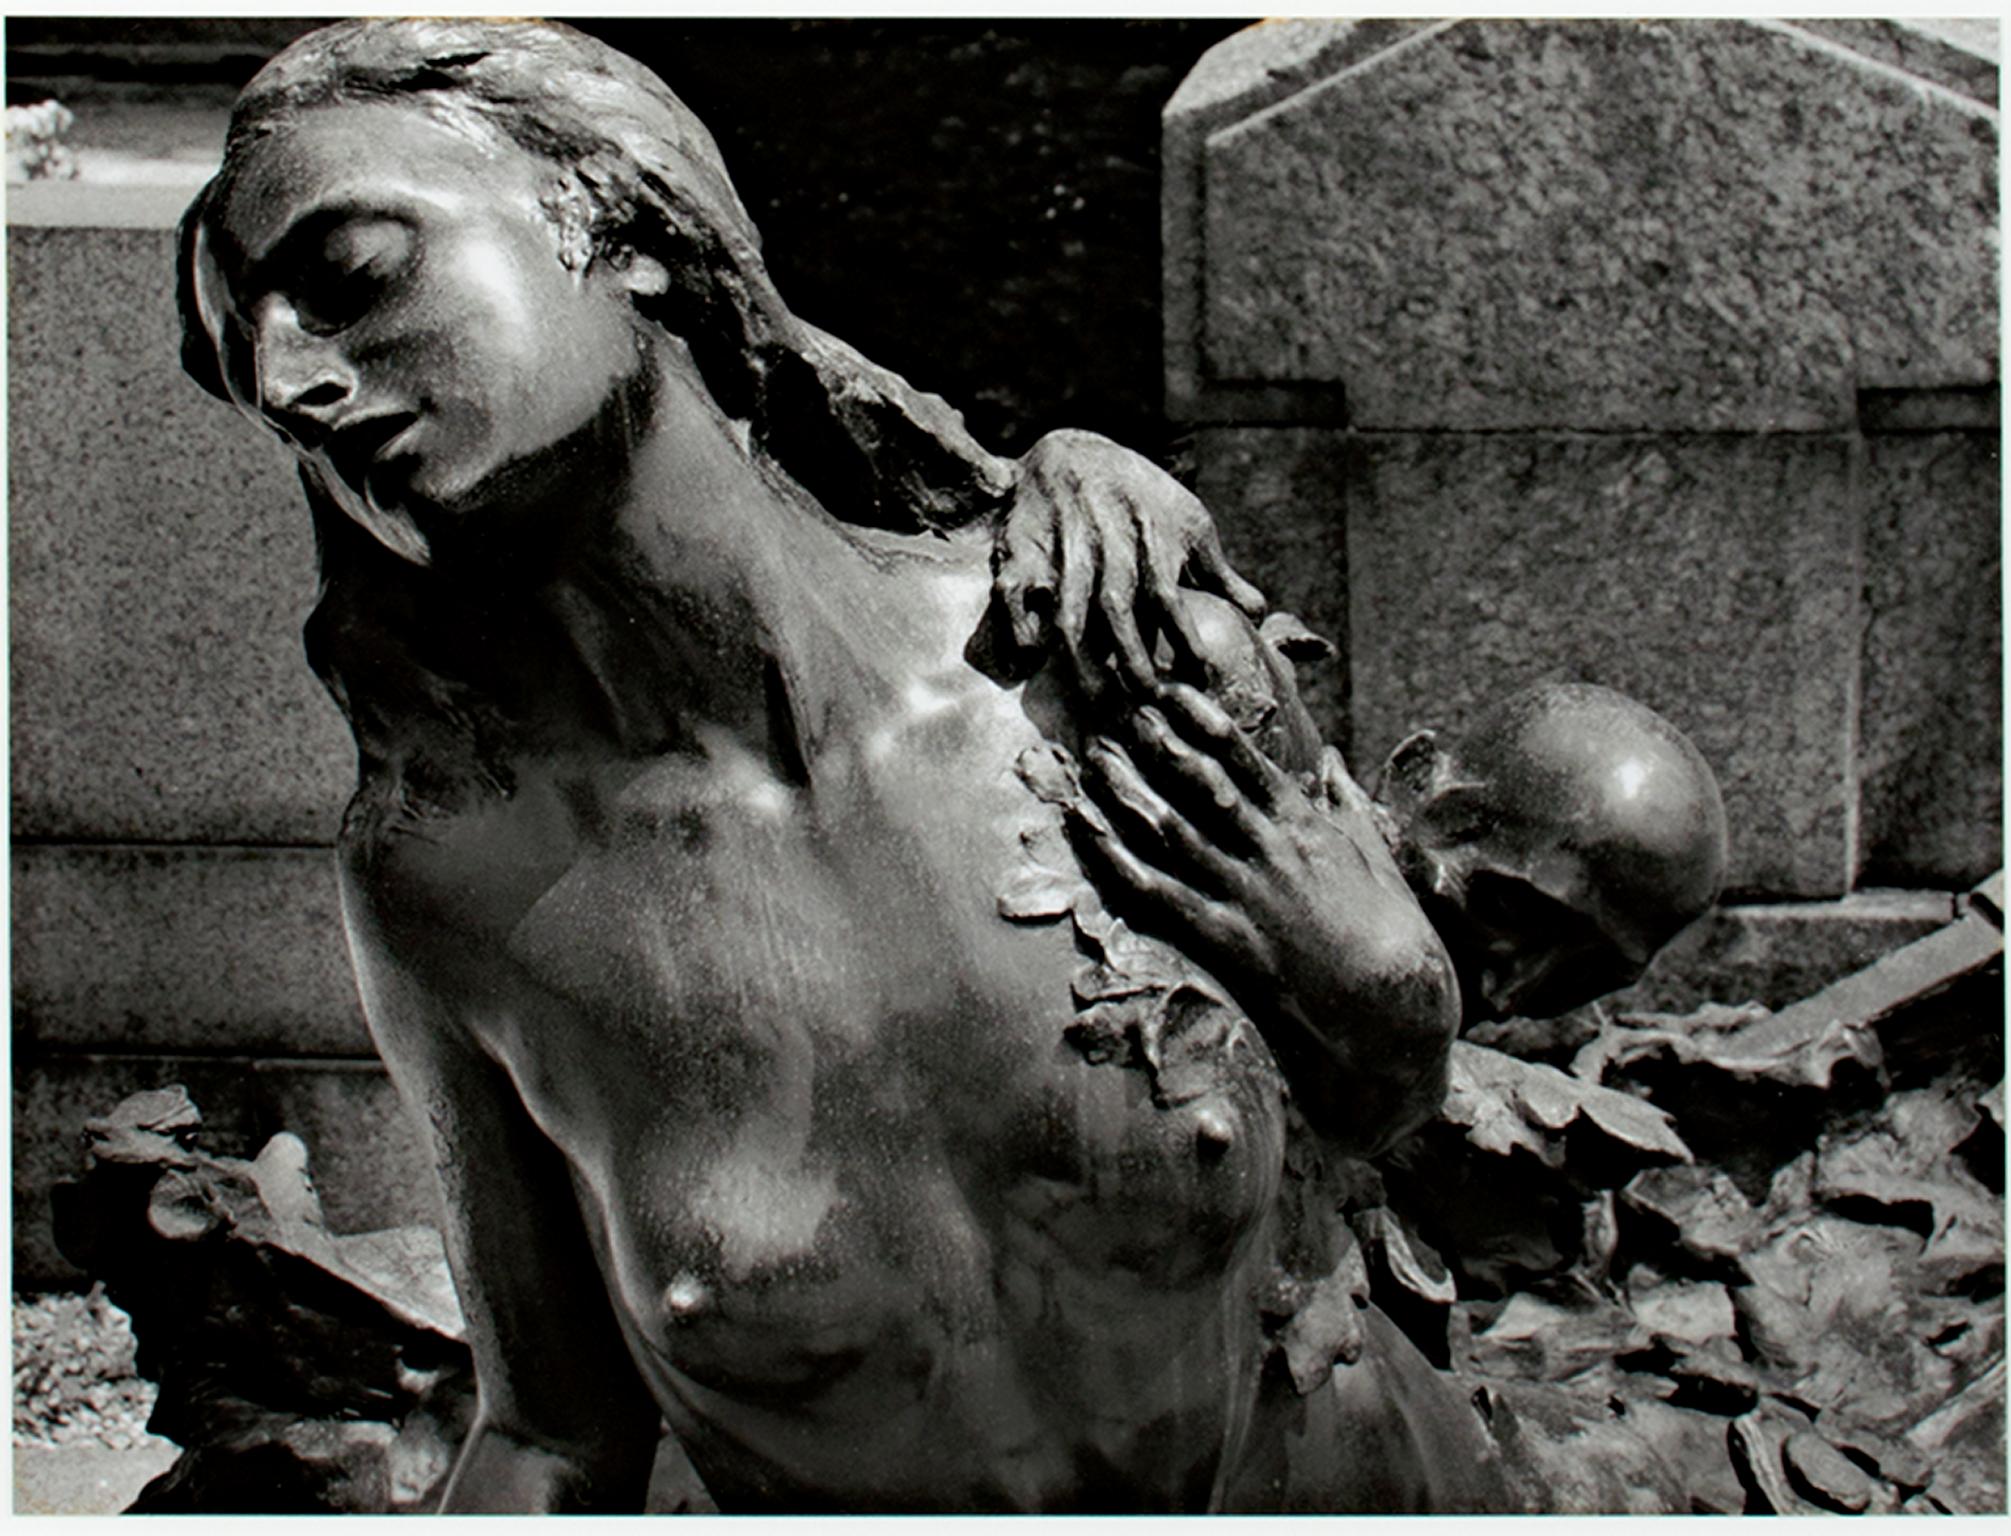 "Milano, Italia" est un tirage photographique original à la gélatine argentique de Philip Krejcarek. L'artiste a signé l'œuvre. Il représente la statue d'une femme nue avec un personnage s'agrippant à son épaule. La photographie est en noir et